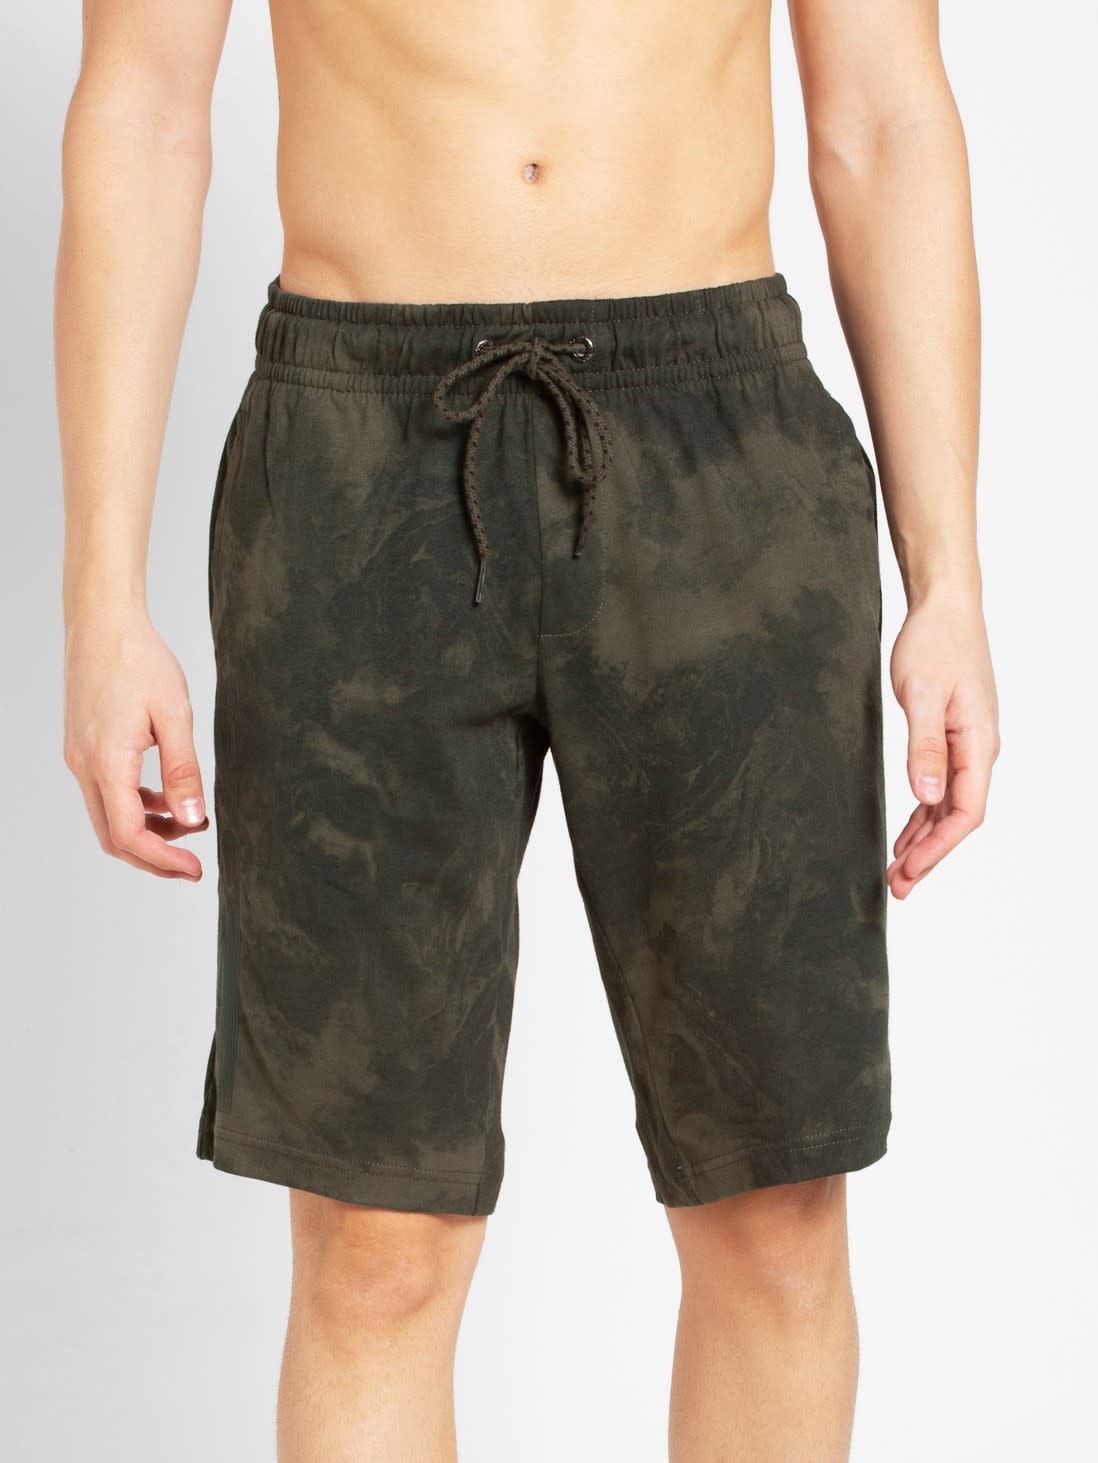 ennoy nylon shorts olive XL - ショートパンツ